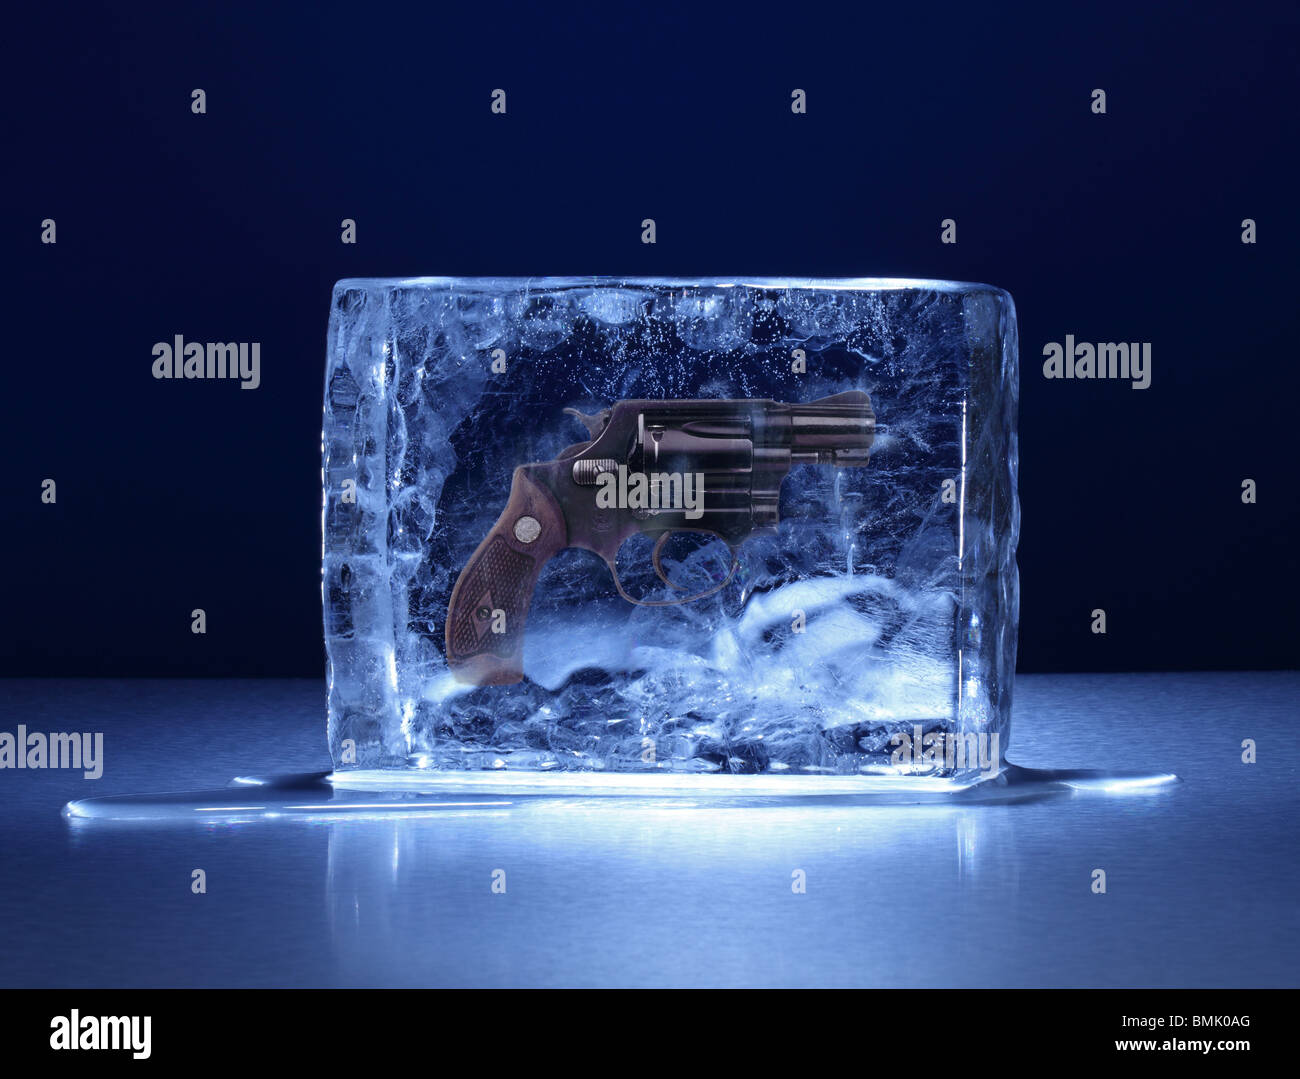 Einen gefrorenen Eisblock mit einer Handfeuerwaffe eingefroren im Inneren auf einer Metalloberfläche Stockfoto